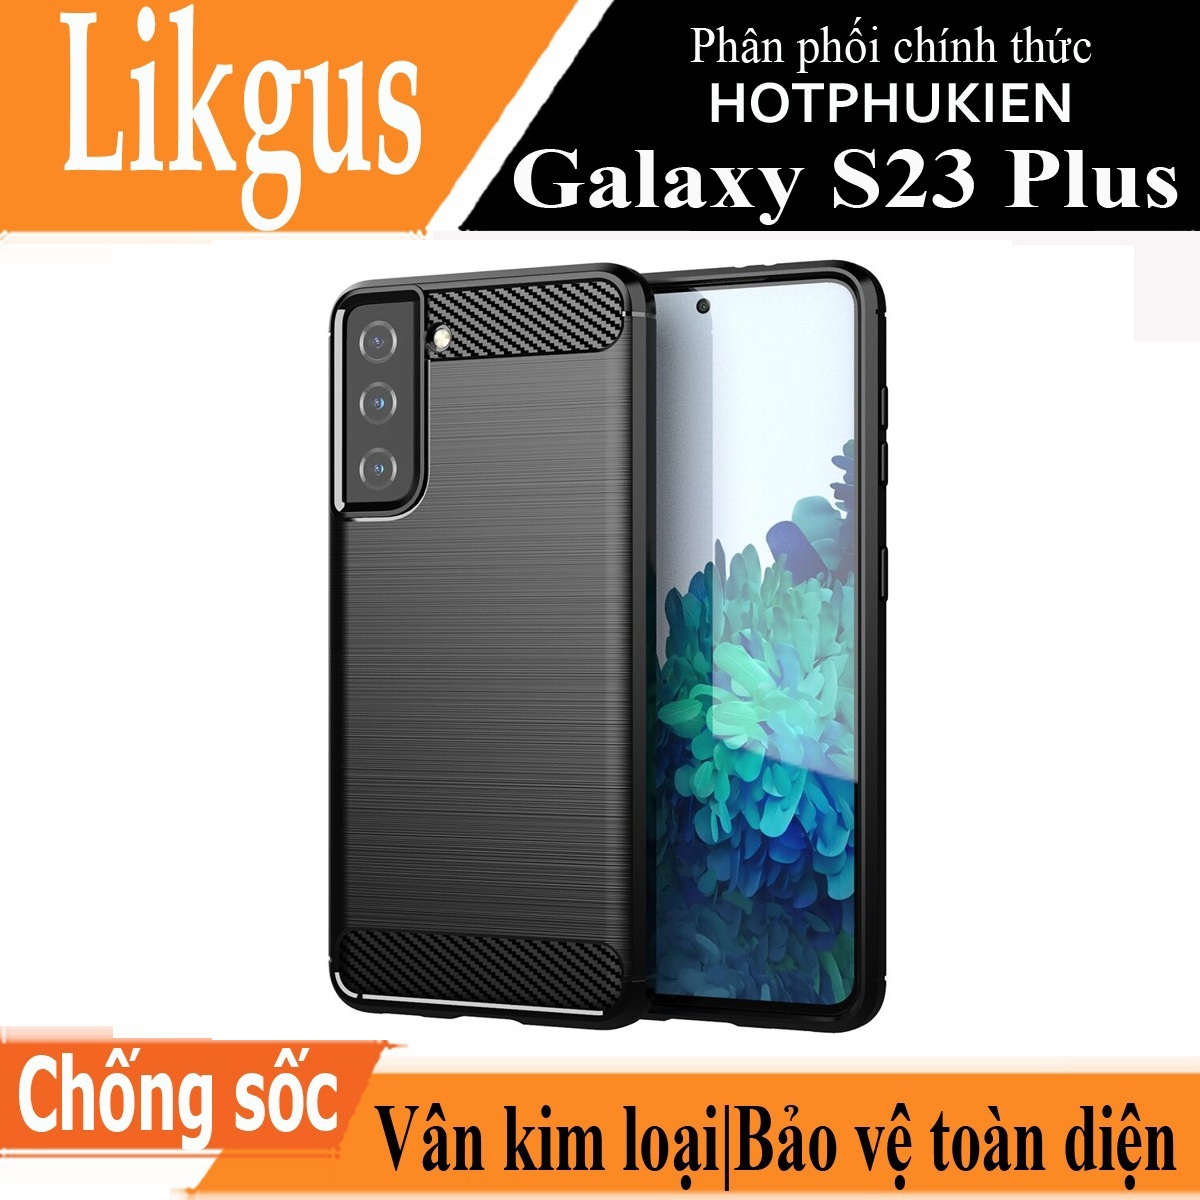 Ốp lưng chống sốc vân kim loại cho Samsung Galaxy S23 Plus hiệu Likgus